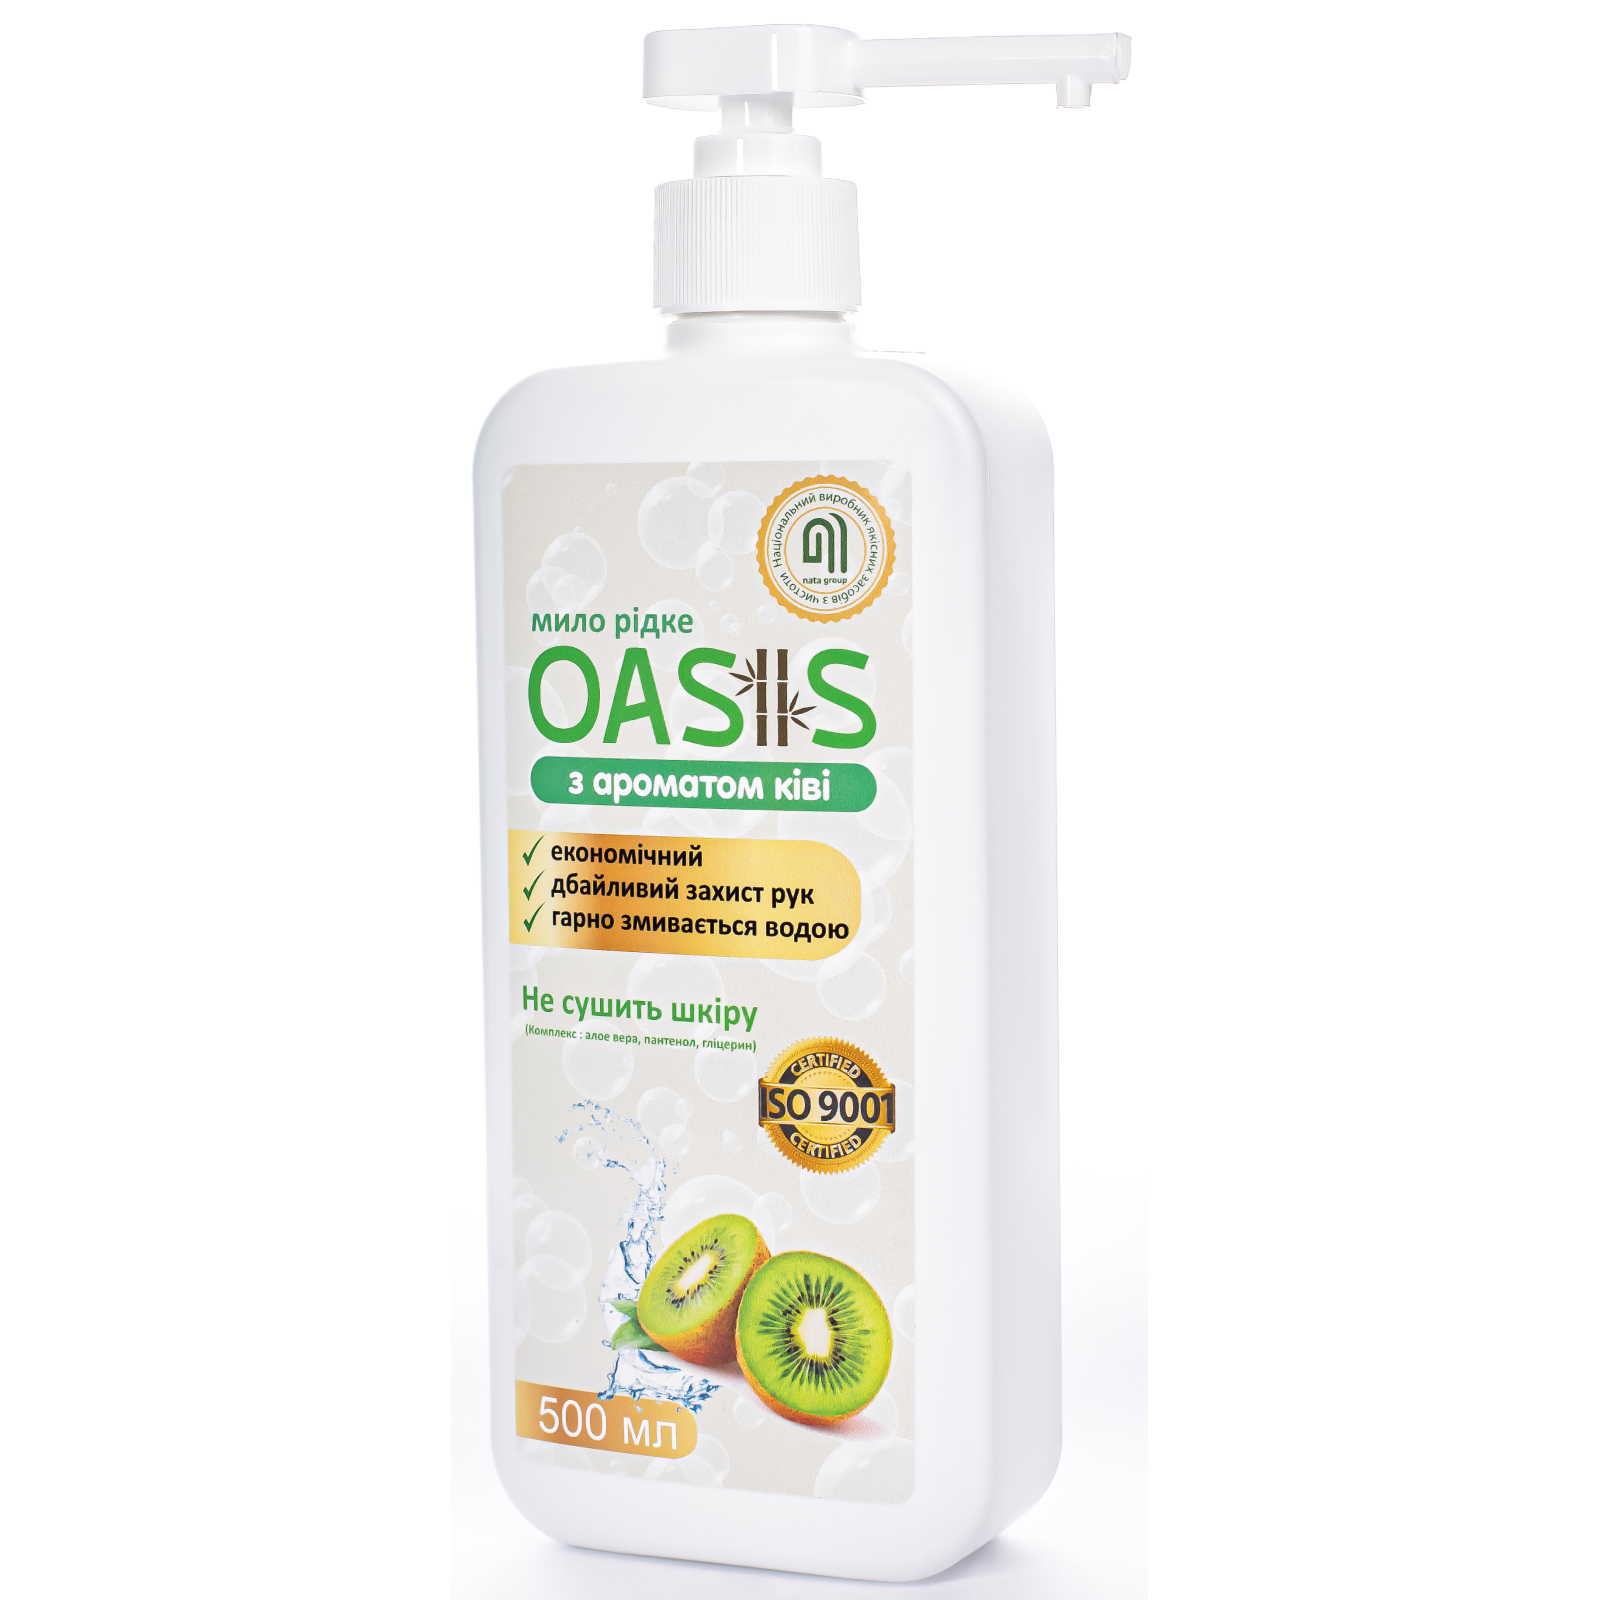 Жидкое мыло Nata Group Oasis С ароматом киви 500 мл (4823112601059) изображение 2